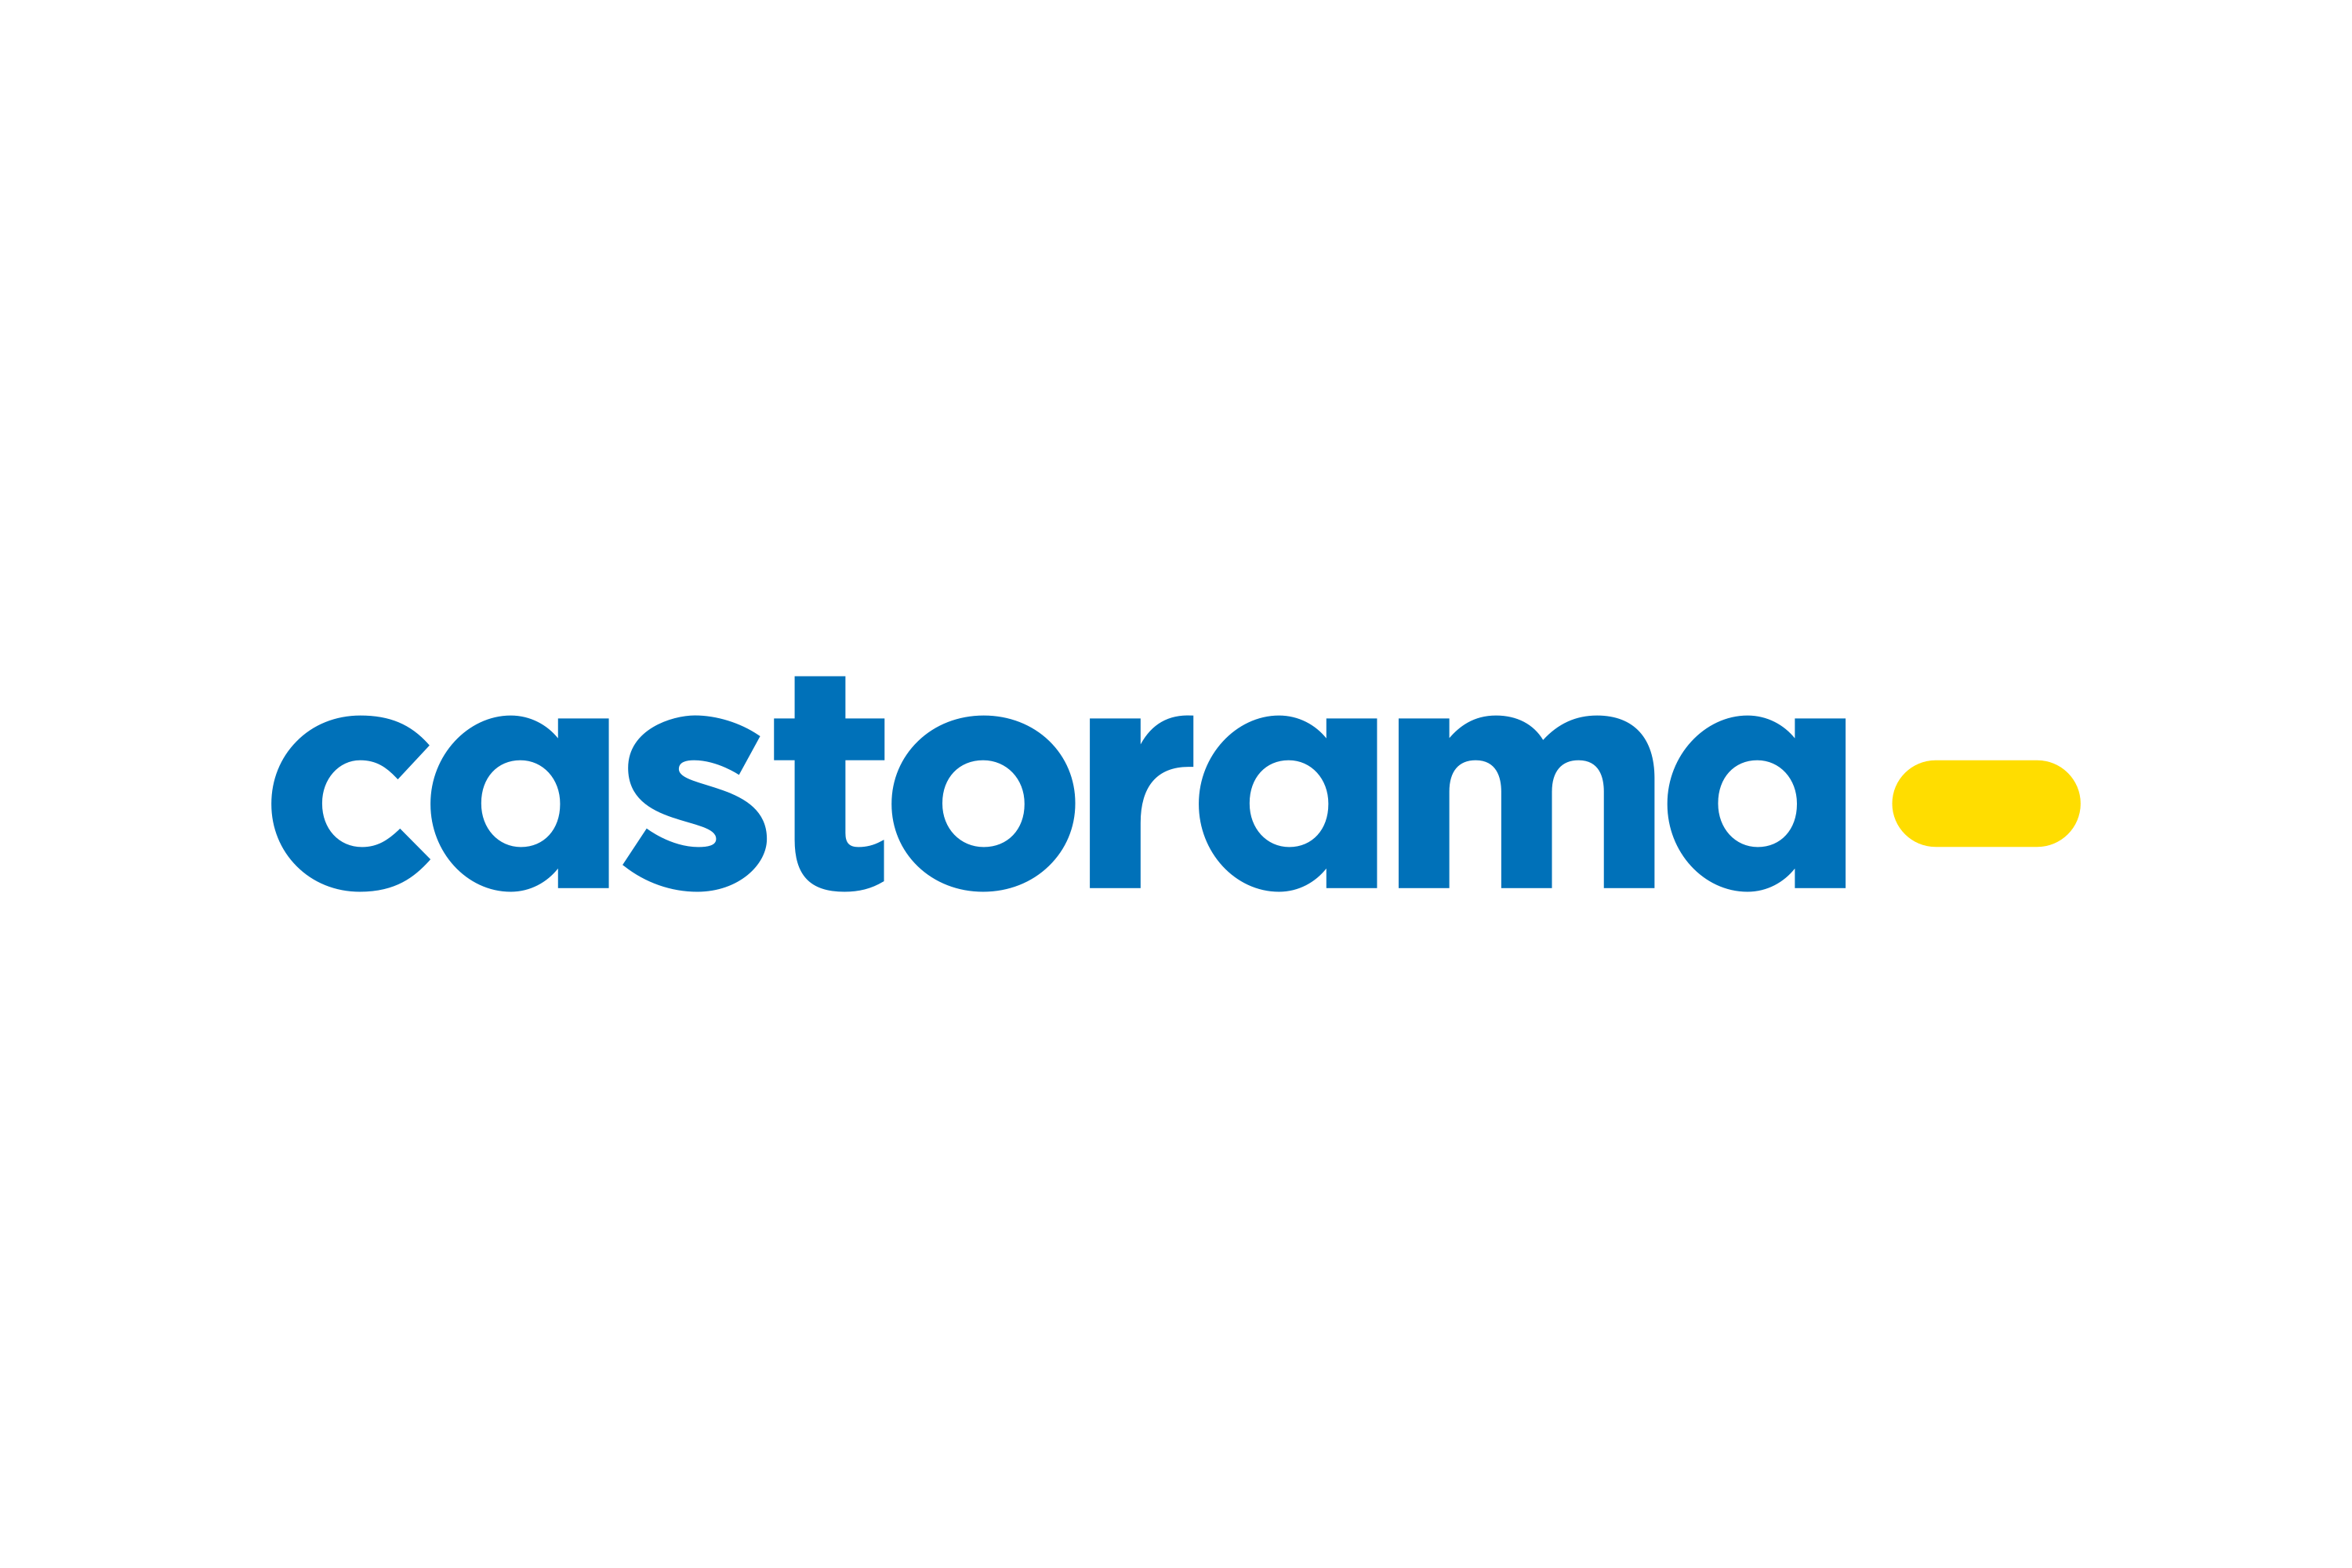 Castorama - logo